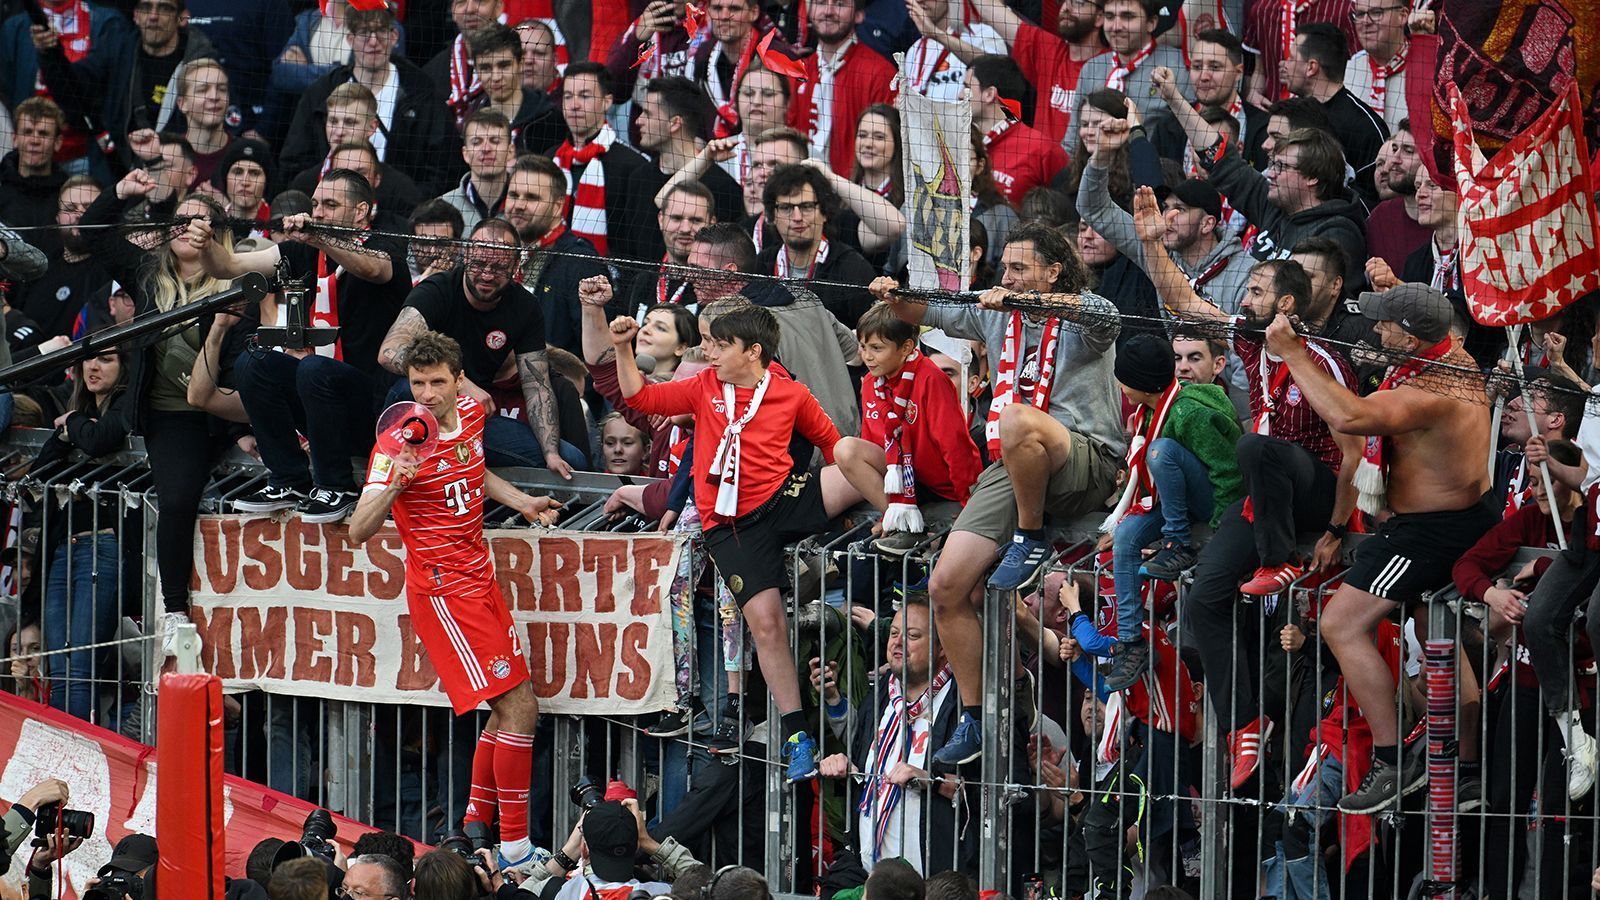 
                <strong>So feiert der FC Bayern München die 32. Meisterschaft</strong><br>
                Für die Fans inzwischen ein routiniertes Ritual - dennoch wird auf den Rängen der Allianz Arena natürlich gefeiert.
              